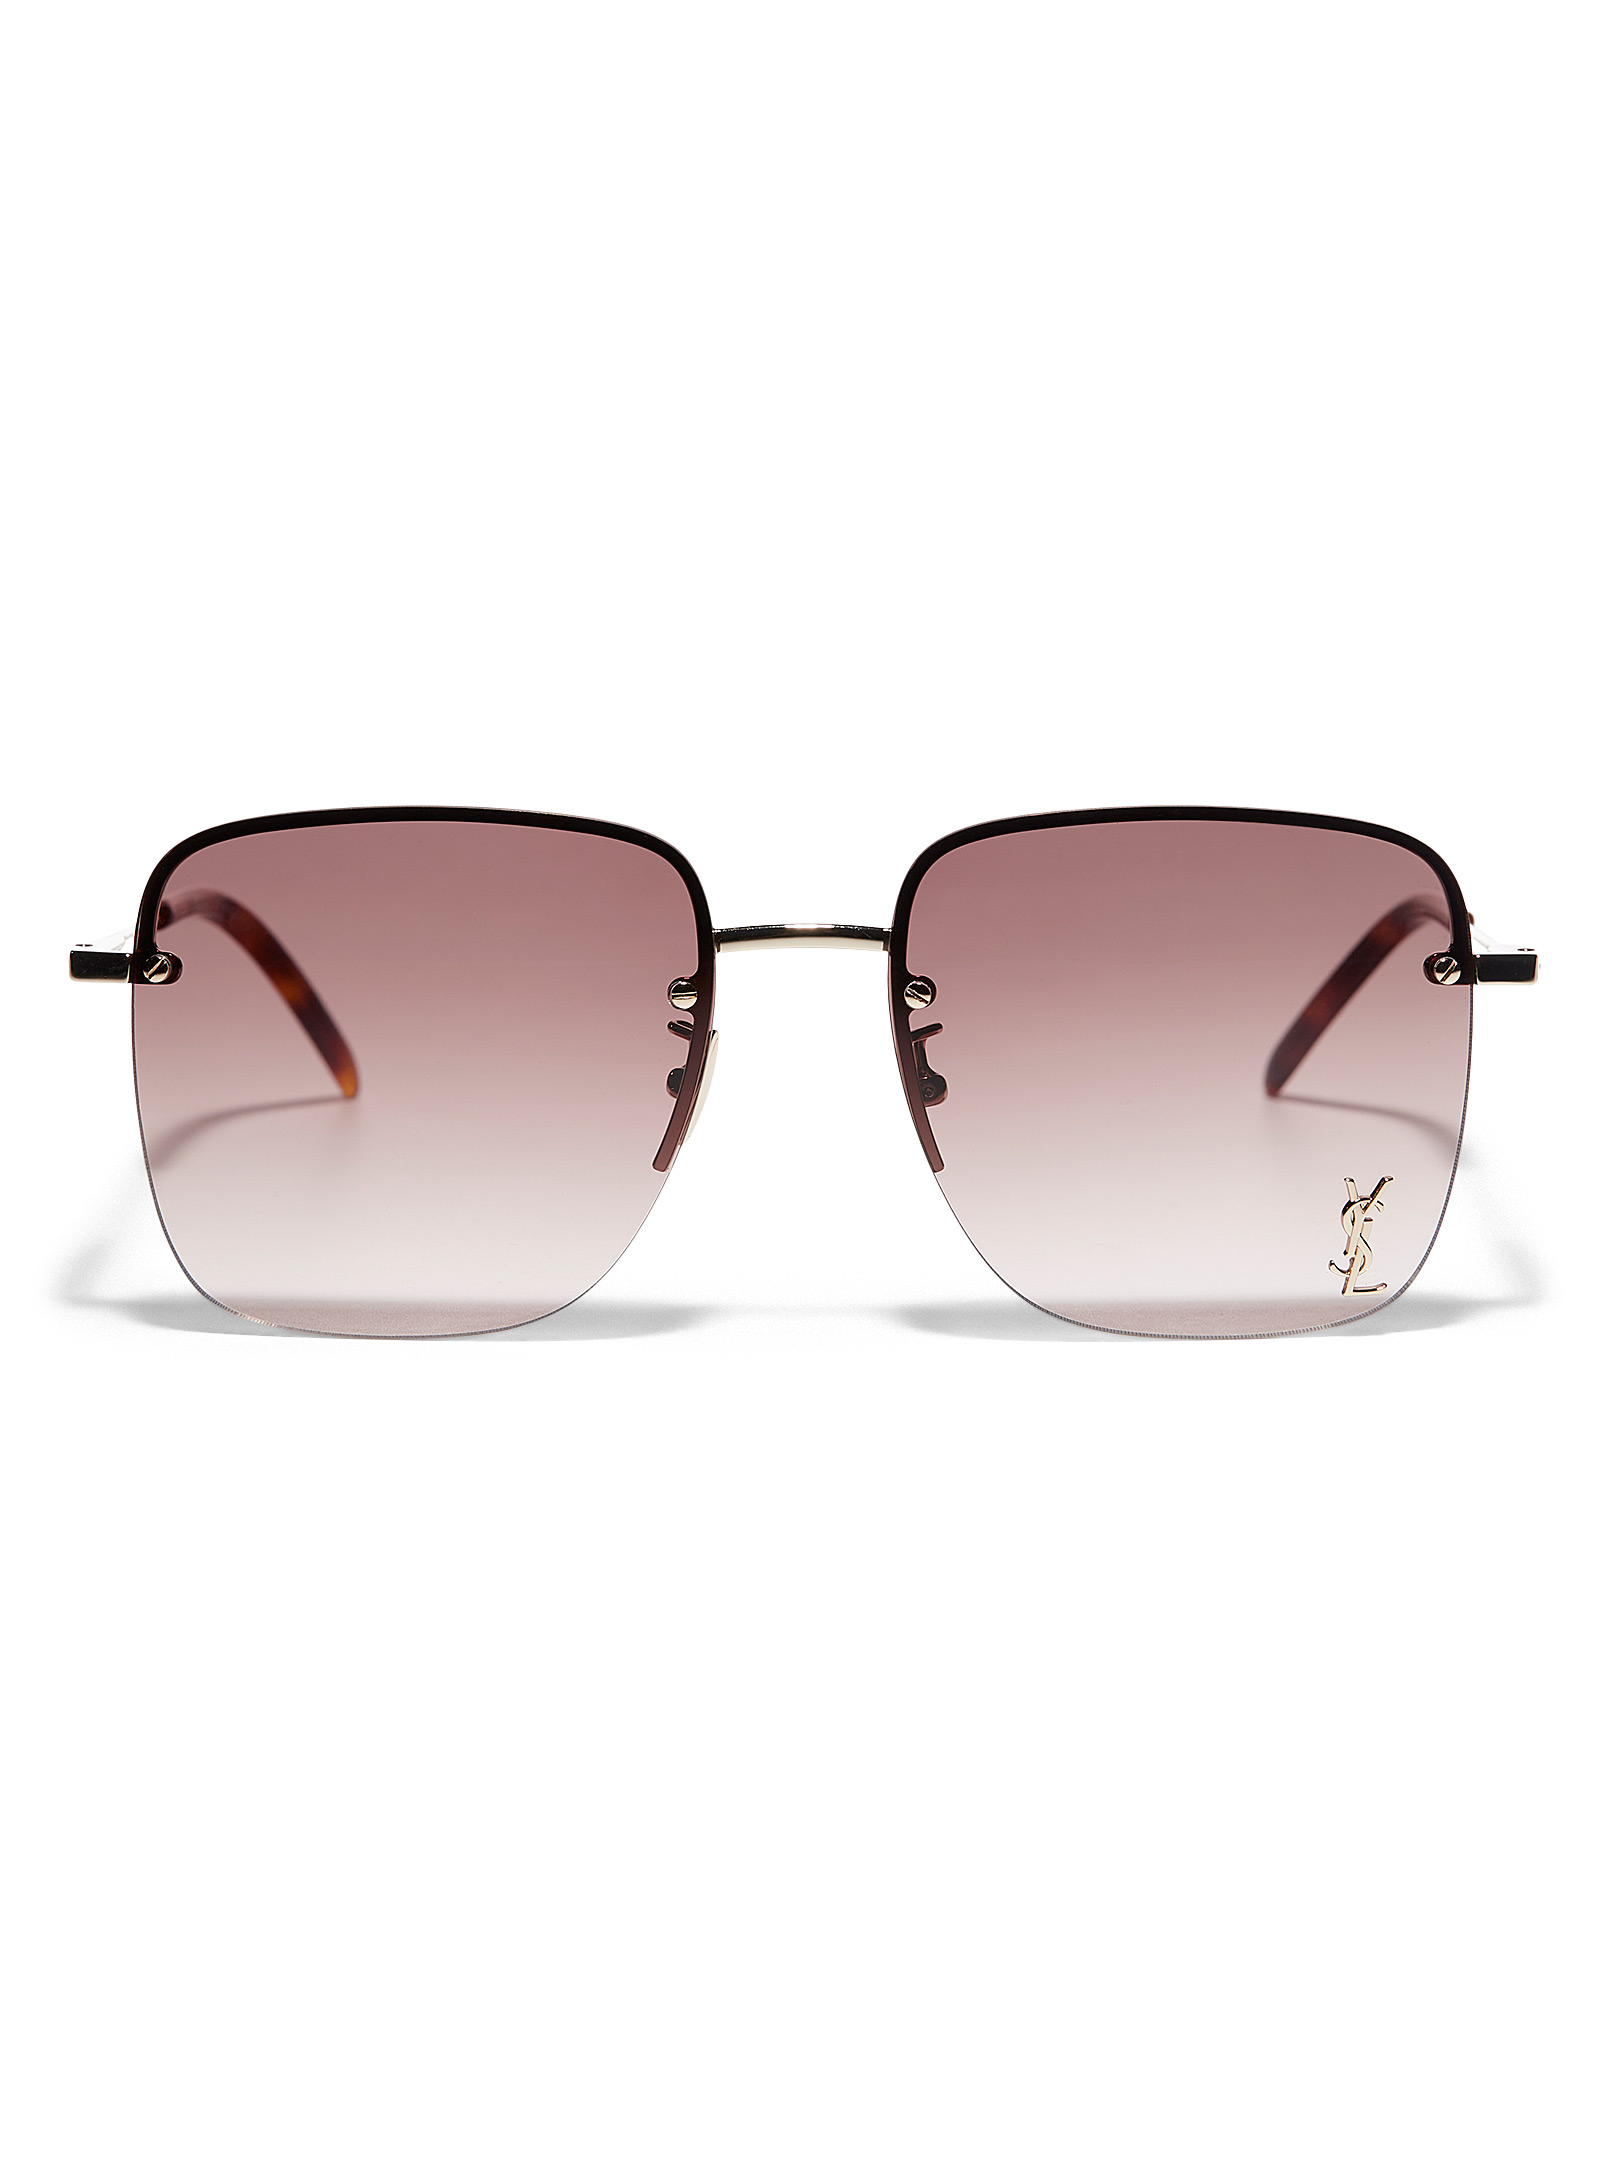 Saint Laurent - Le lunettes de soleil carrées brunes à logo doré